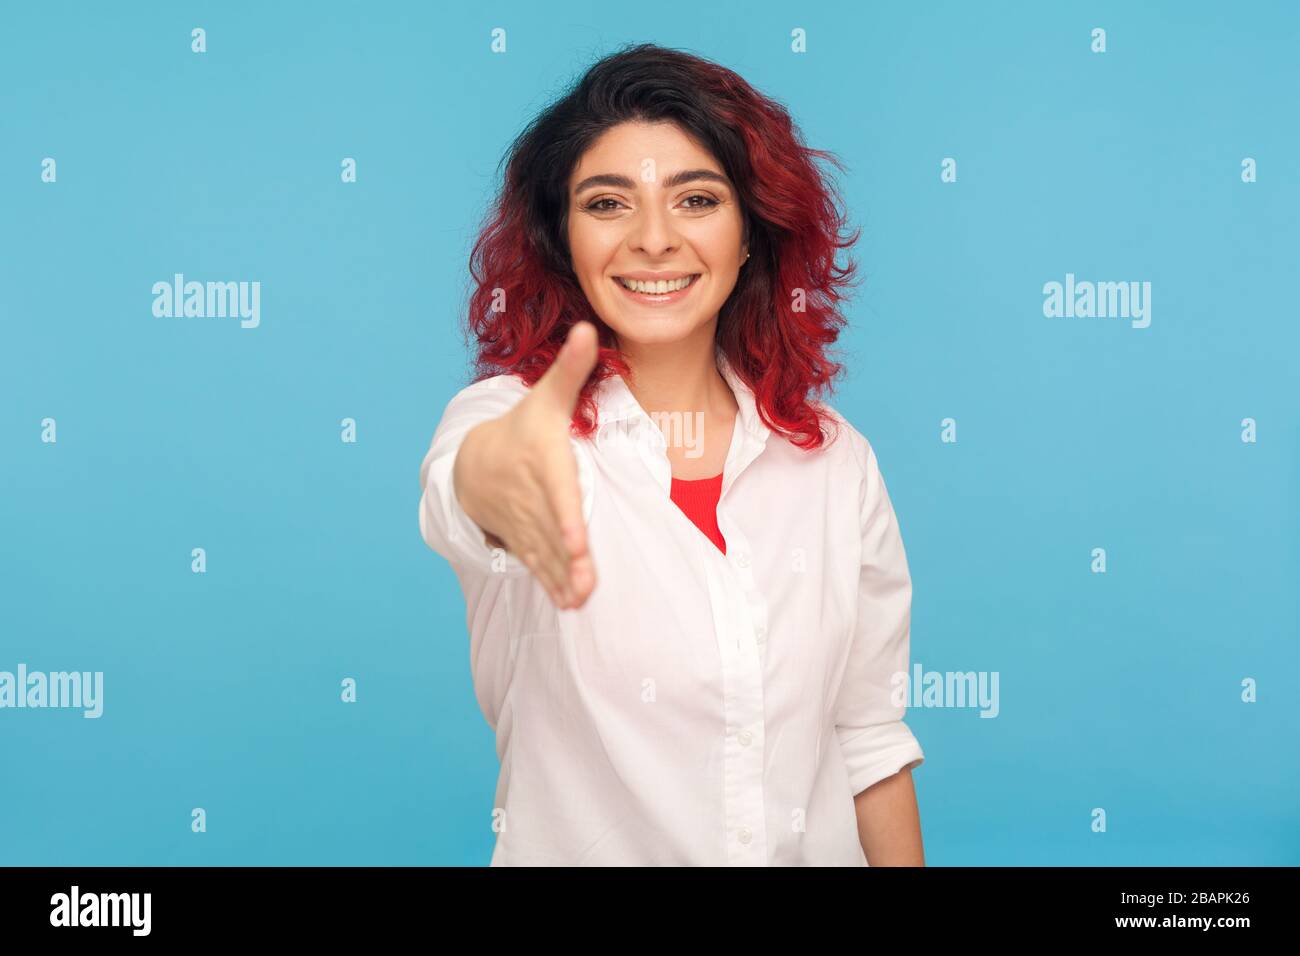 Piacere di incontrare, benvenuto! Ritratto di socievole donna hippster con fantasia capelli rossi in camicia dando mano a stretta di mano e sorridente amichevole, dicendo congrats. Foto Stock